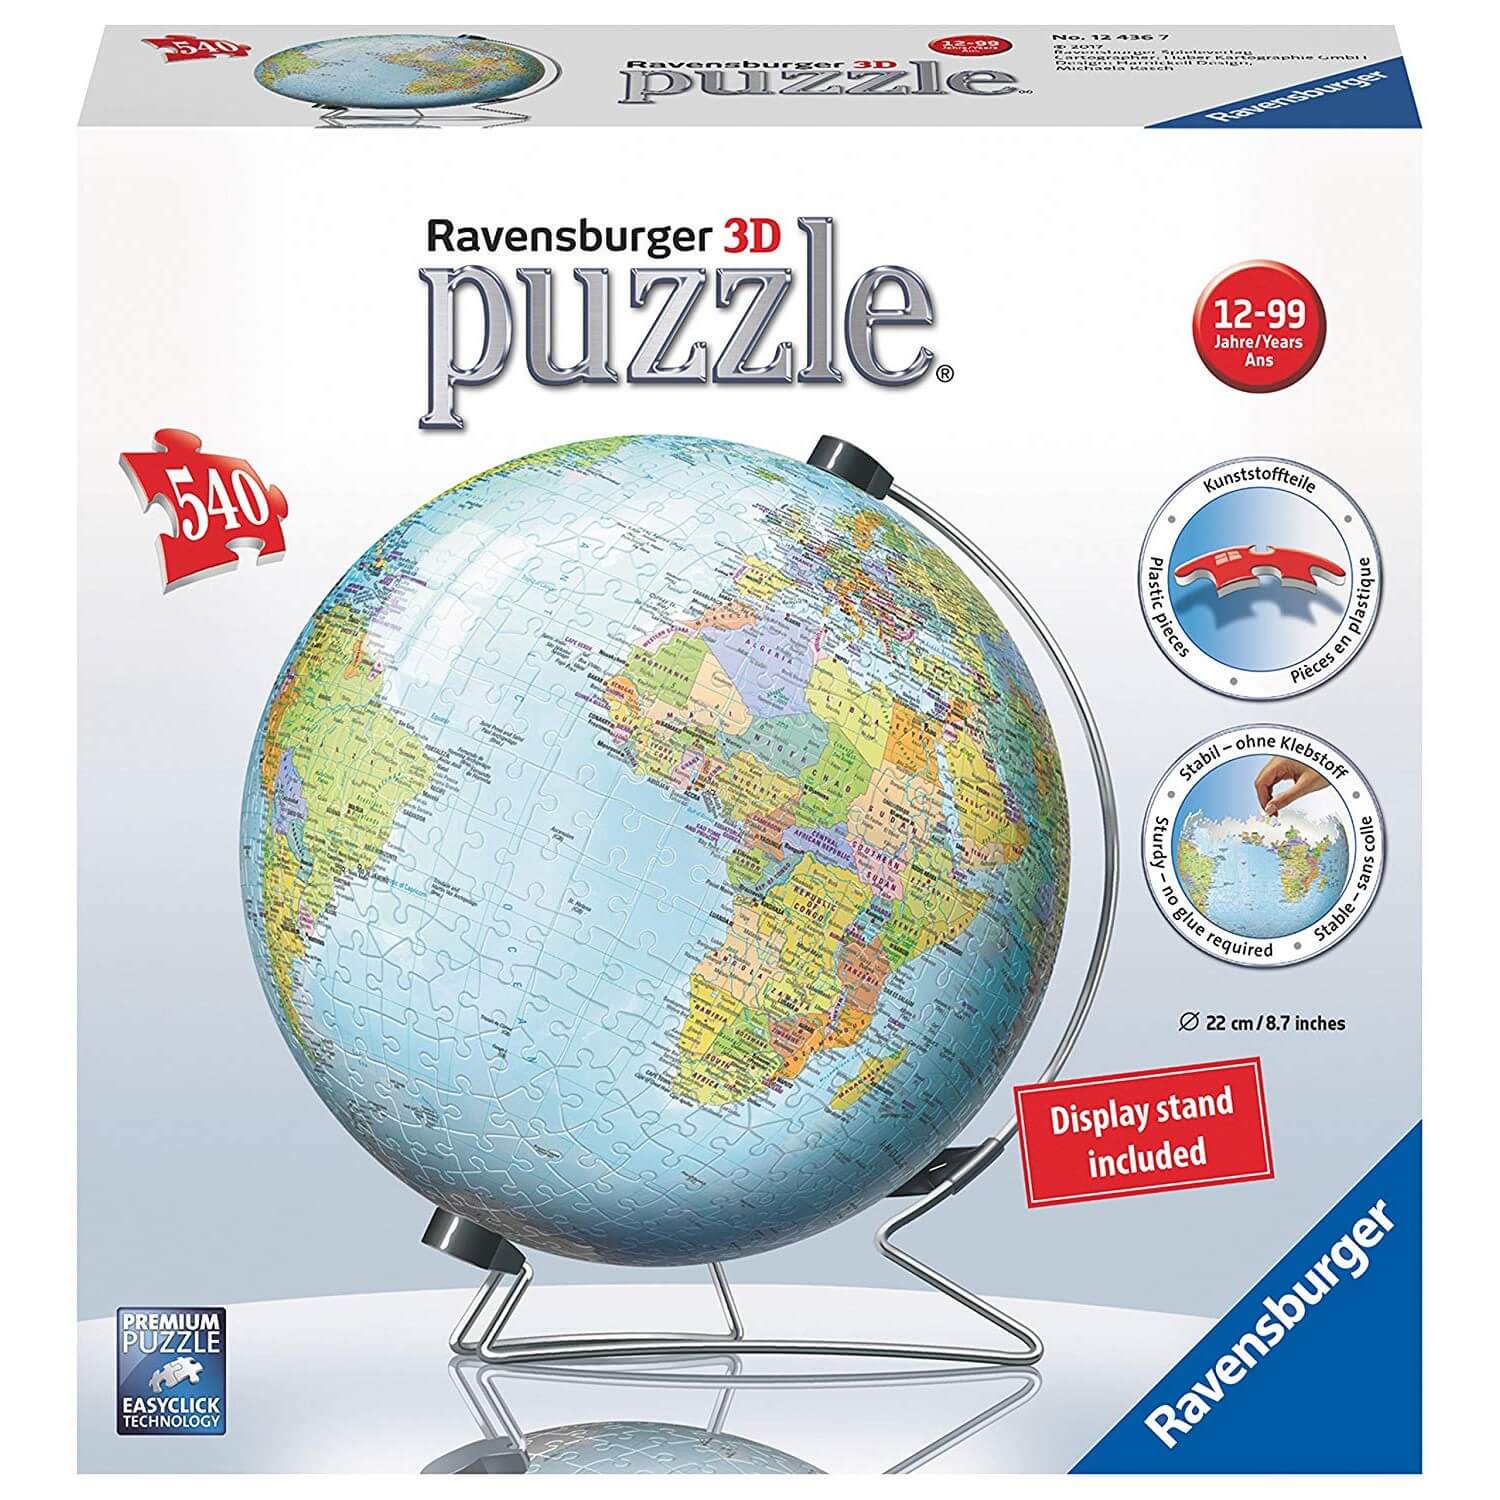 Mappemonde pour enfant: globes, cartes, puzzles